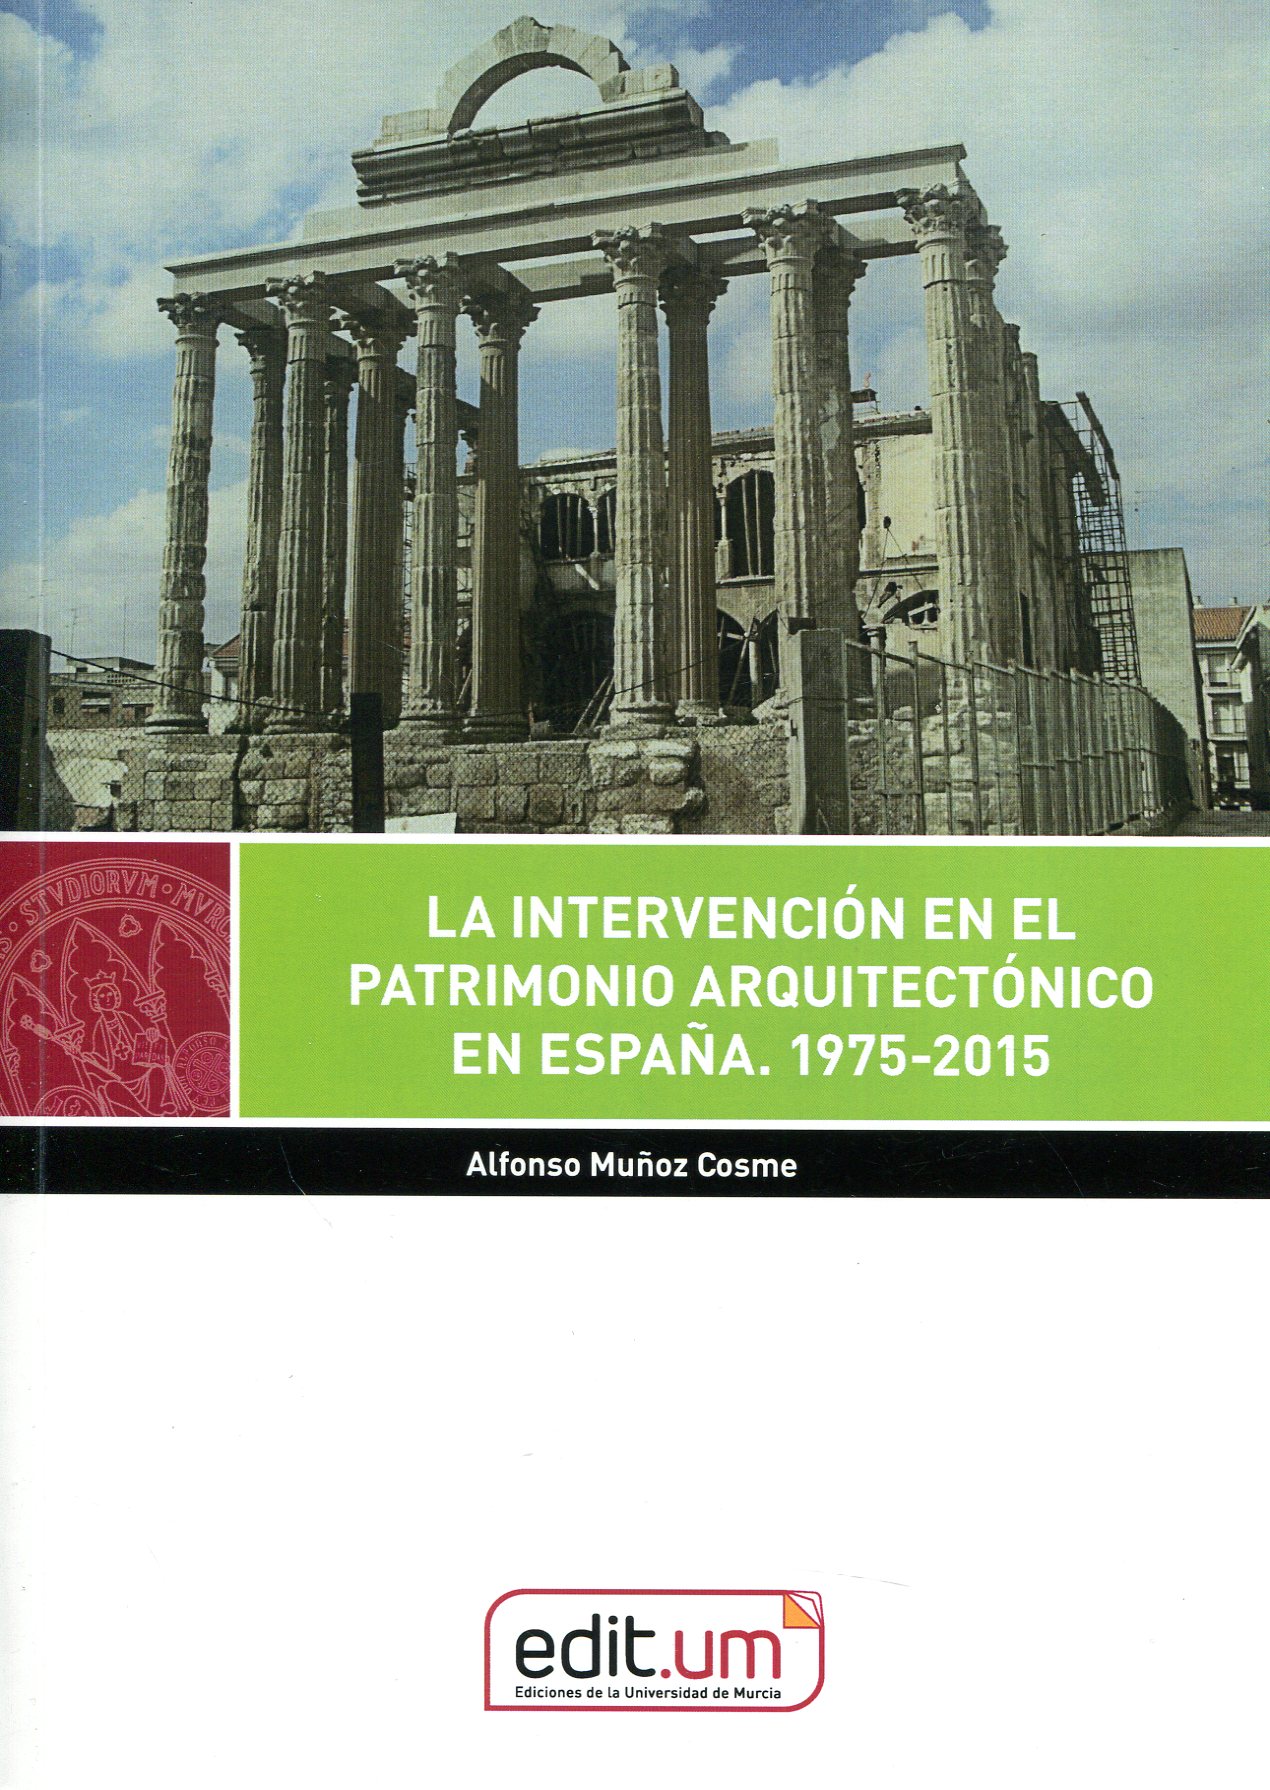 La intervención en el Patrimonio Arquitectónico en España. 1975-2015